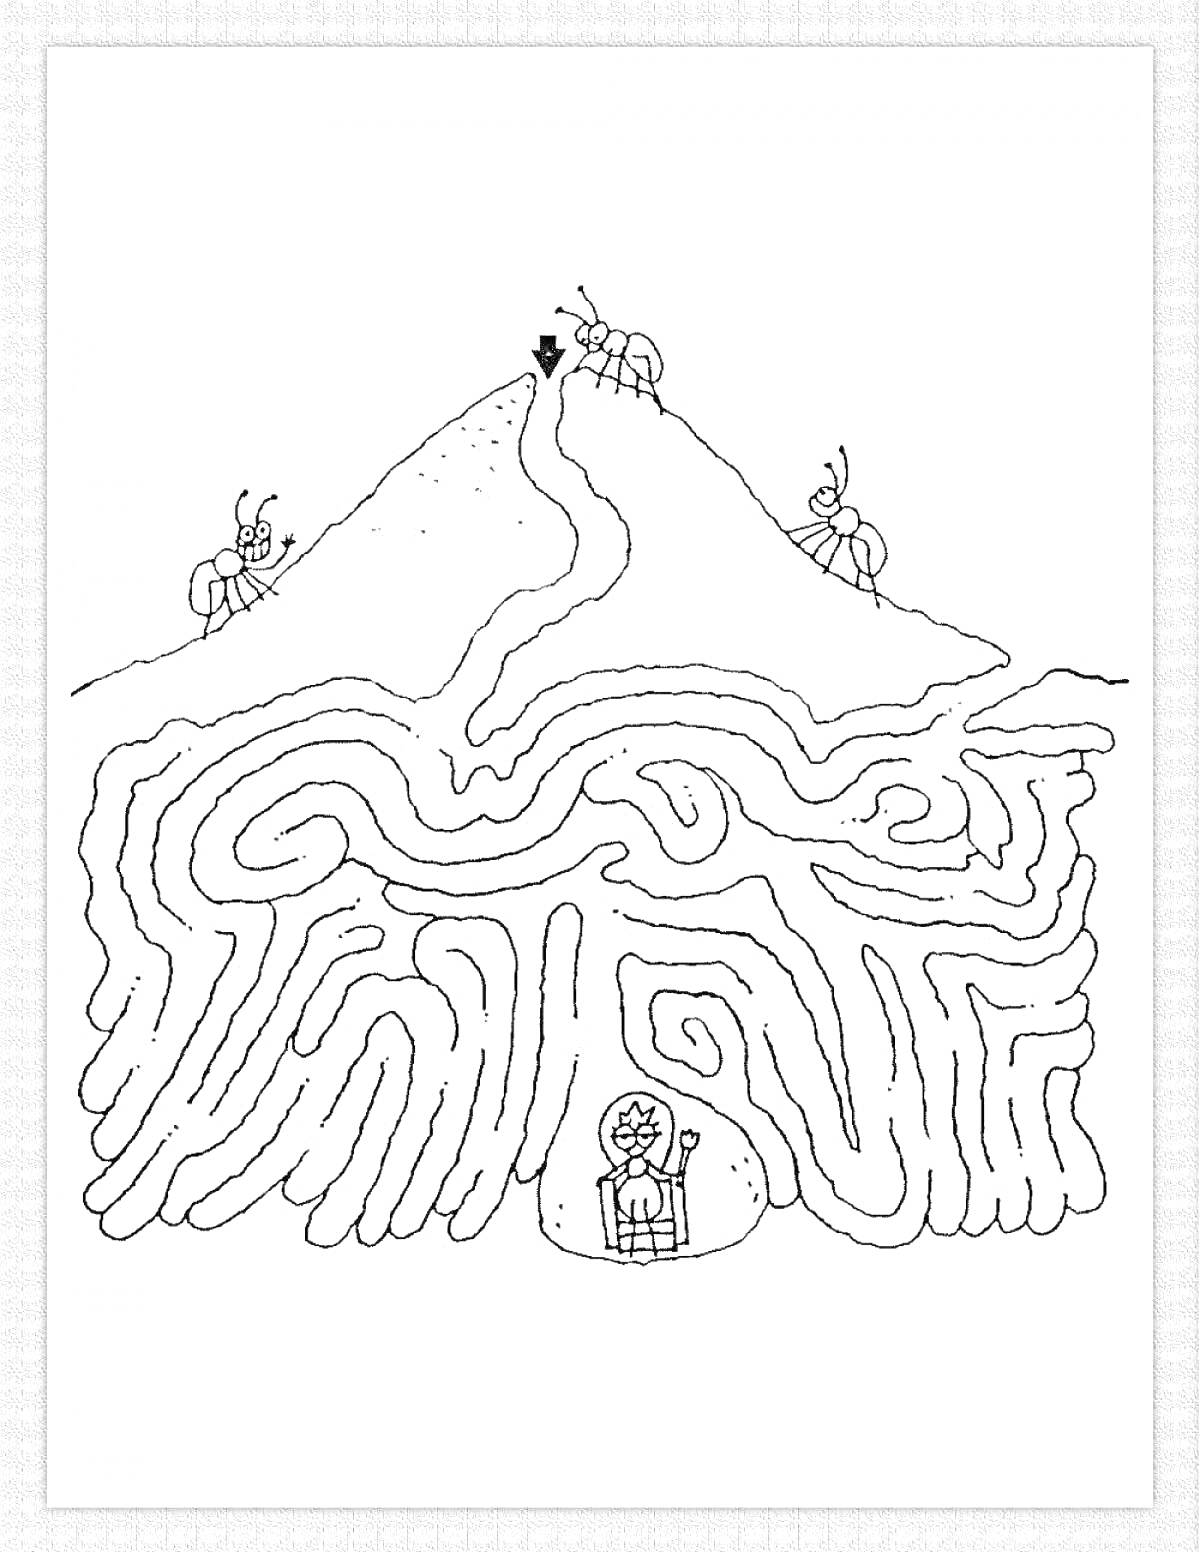 Раскраска Муравейник с лабиринтом под землей и муравьями на поверхности